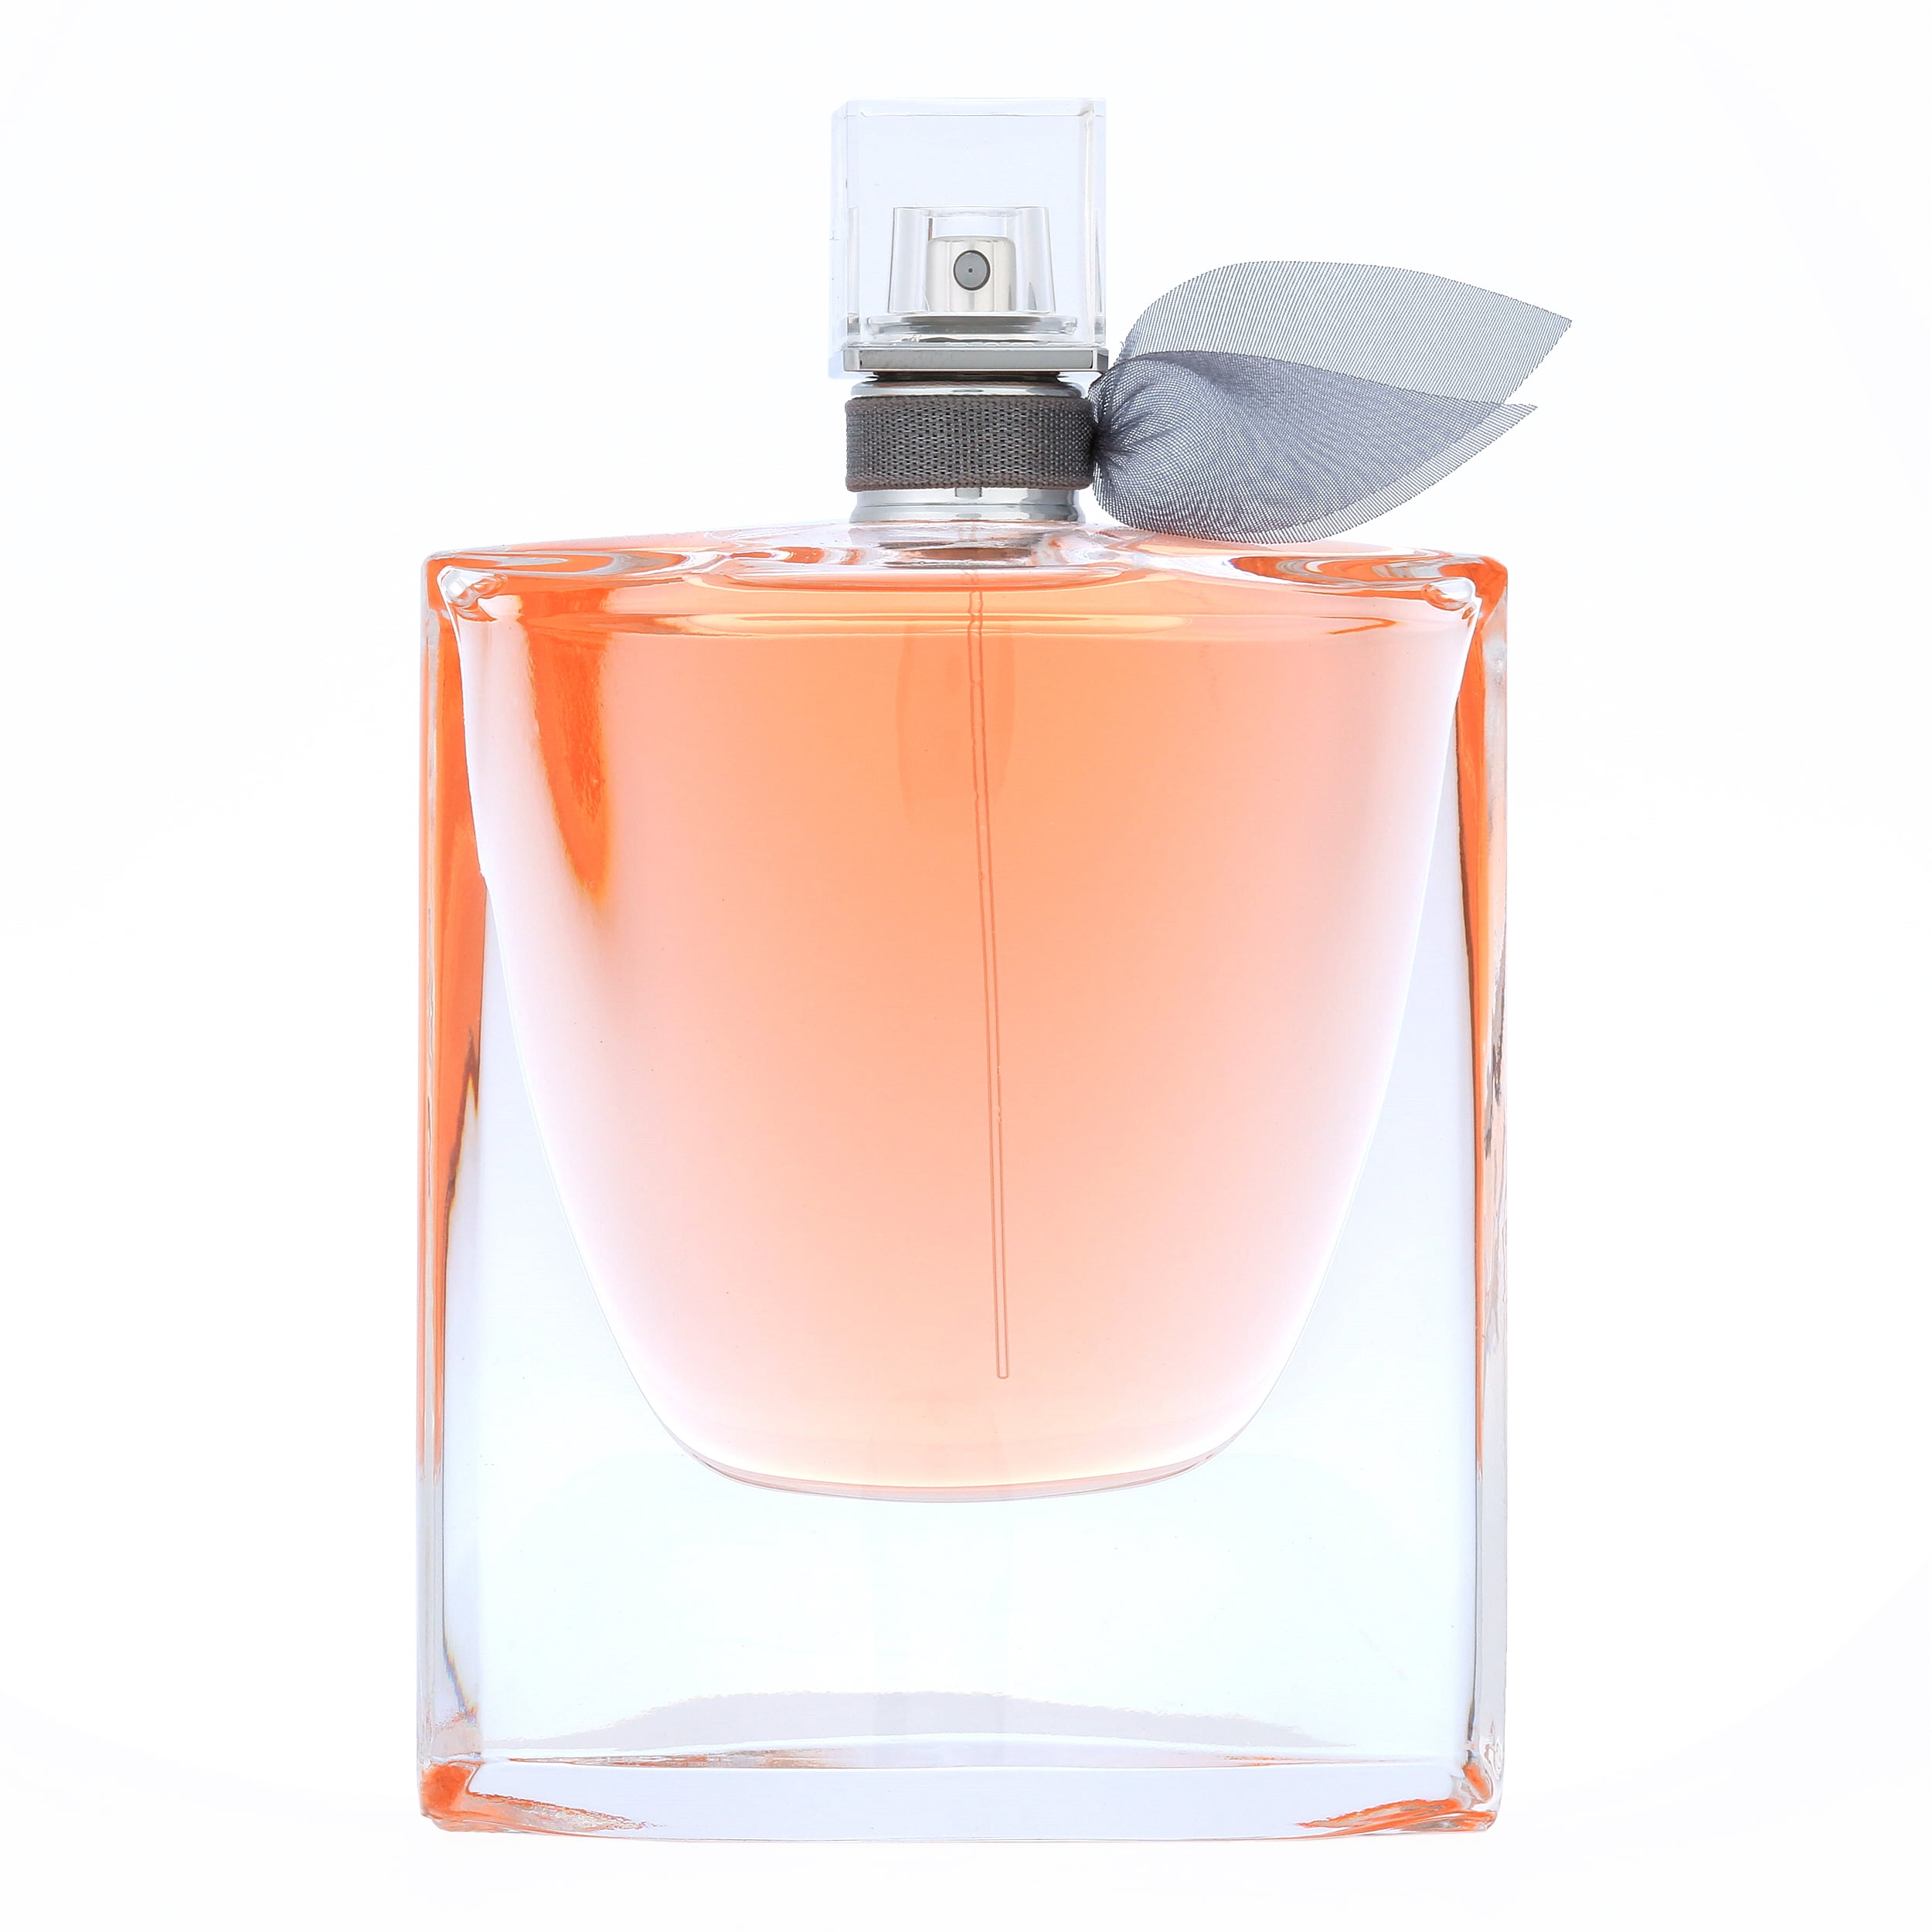 Lancome La Vie Est Eau de Parfum, Perfume for Women, 3.4 Oz - Walmart.com